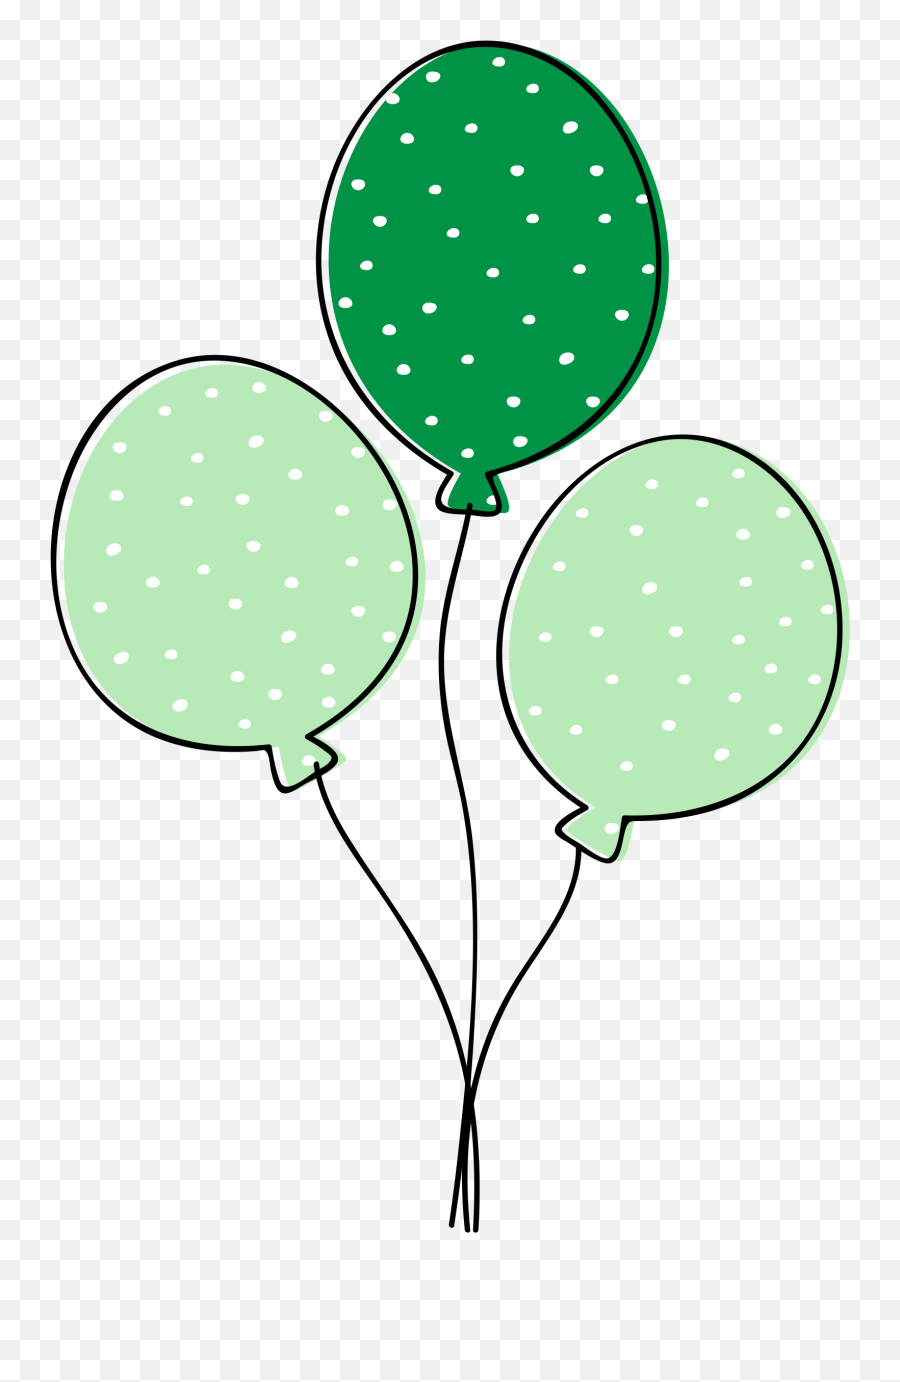 Green Balloons Clipart - Green Balloon Clipart Png,Balloons Clipart Transparent